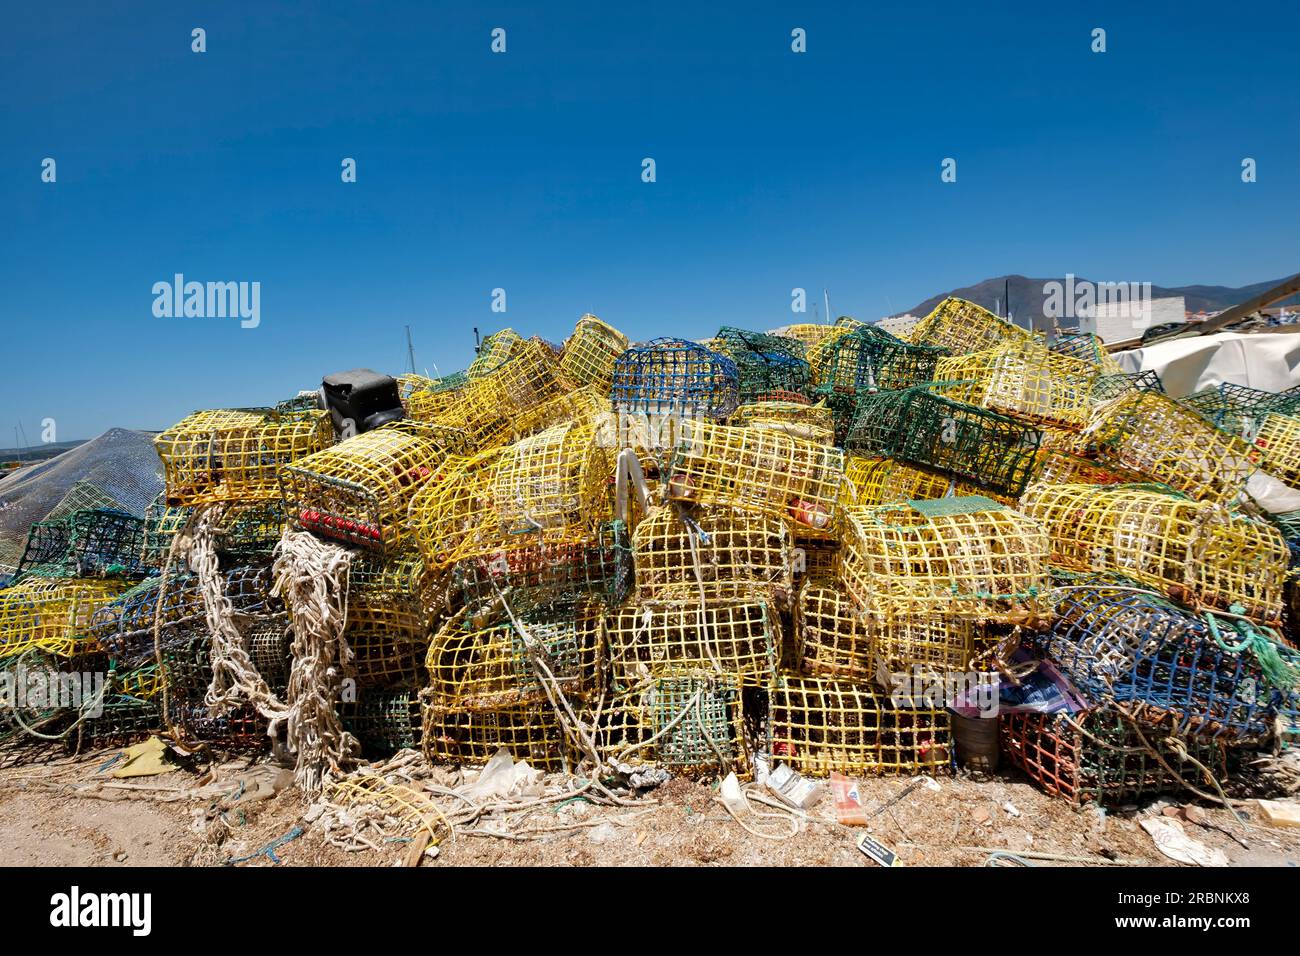 Ein Stapel von farbenfrohen Hummern und Krabbentöpfen oder Körben aus Plastik, die von Fischern am Hafen Estepona, Spanien, zum Trocknen gelassen wurden Stockfoto